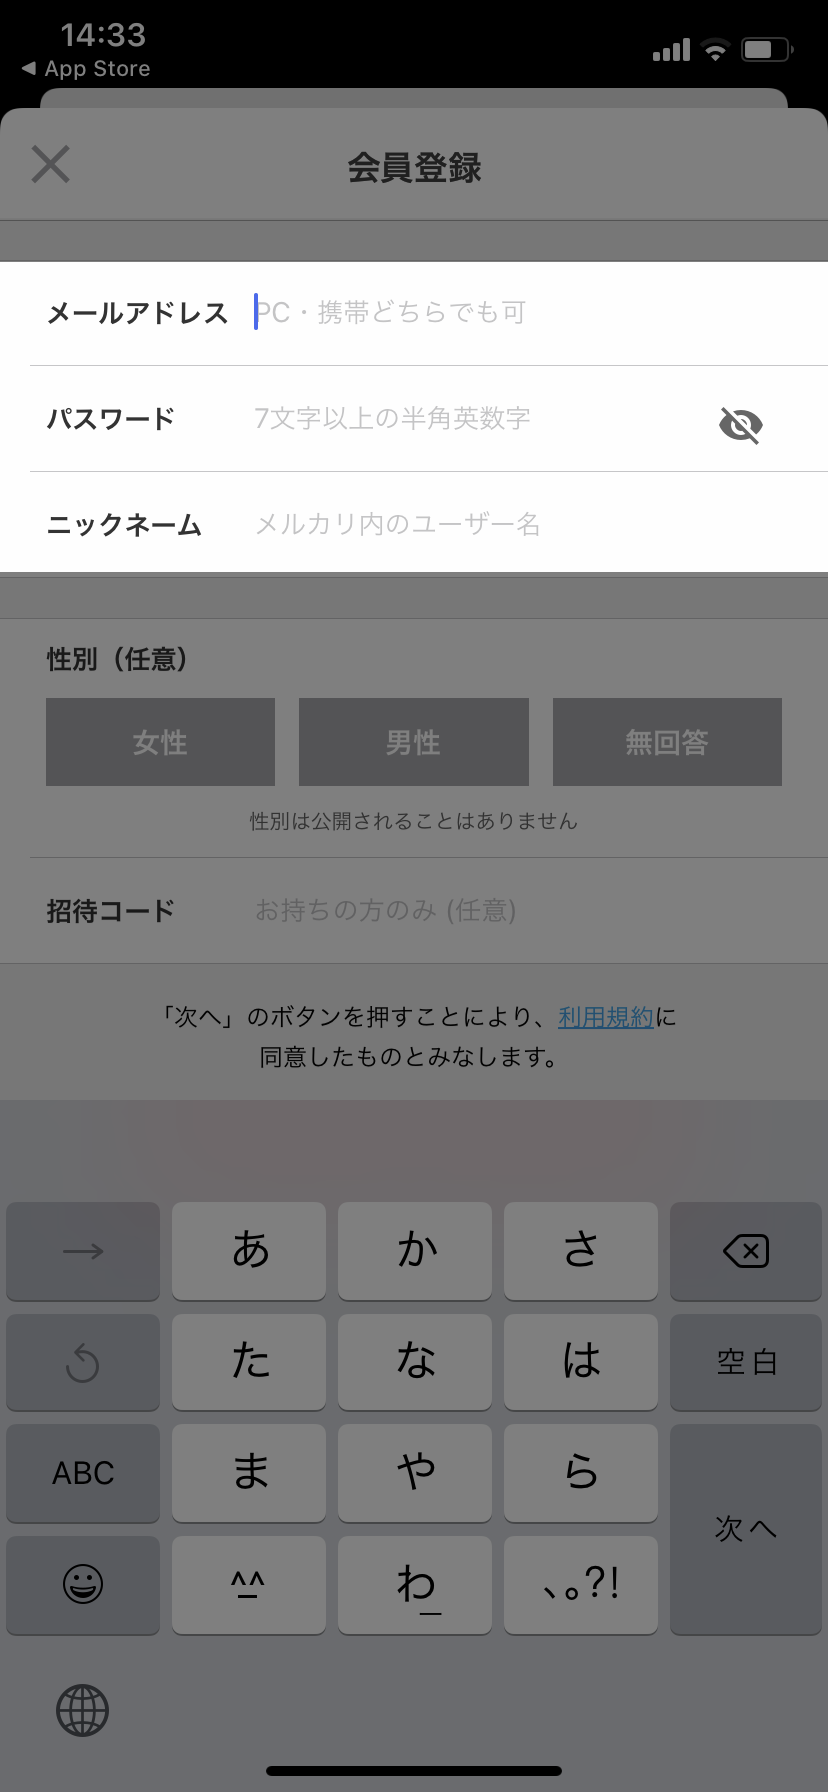 メルカリアプリでアカウント開設（会員登録）する方法【iOS/2020年版】